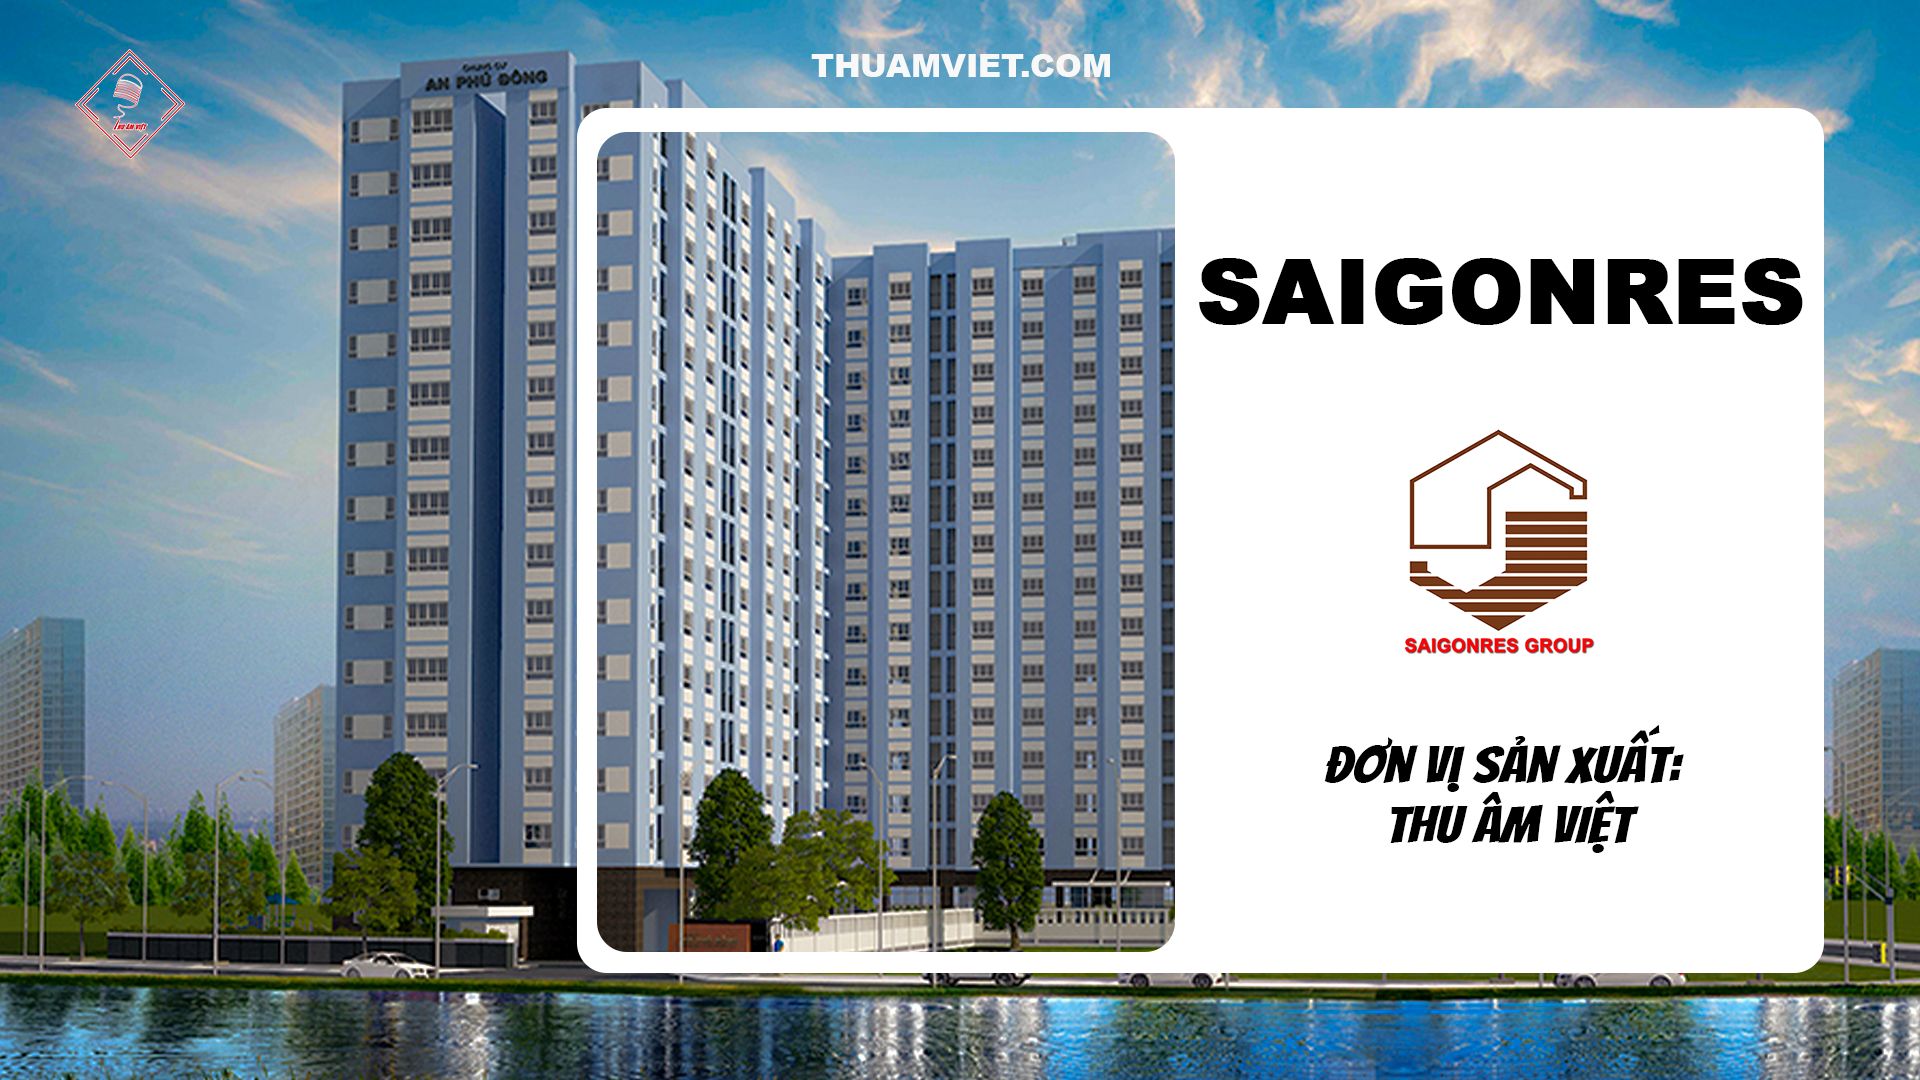 Công ty Saigonres với kinh nghiệm 40 năm trong lĩnh vực Bất động sản